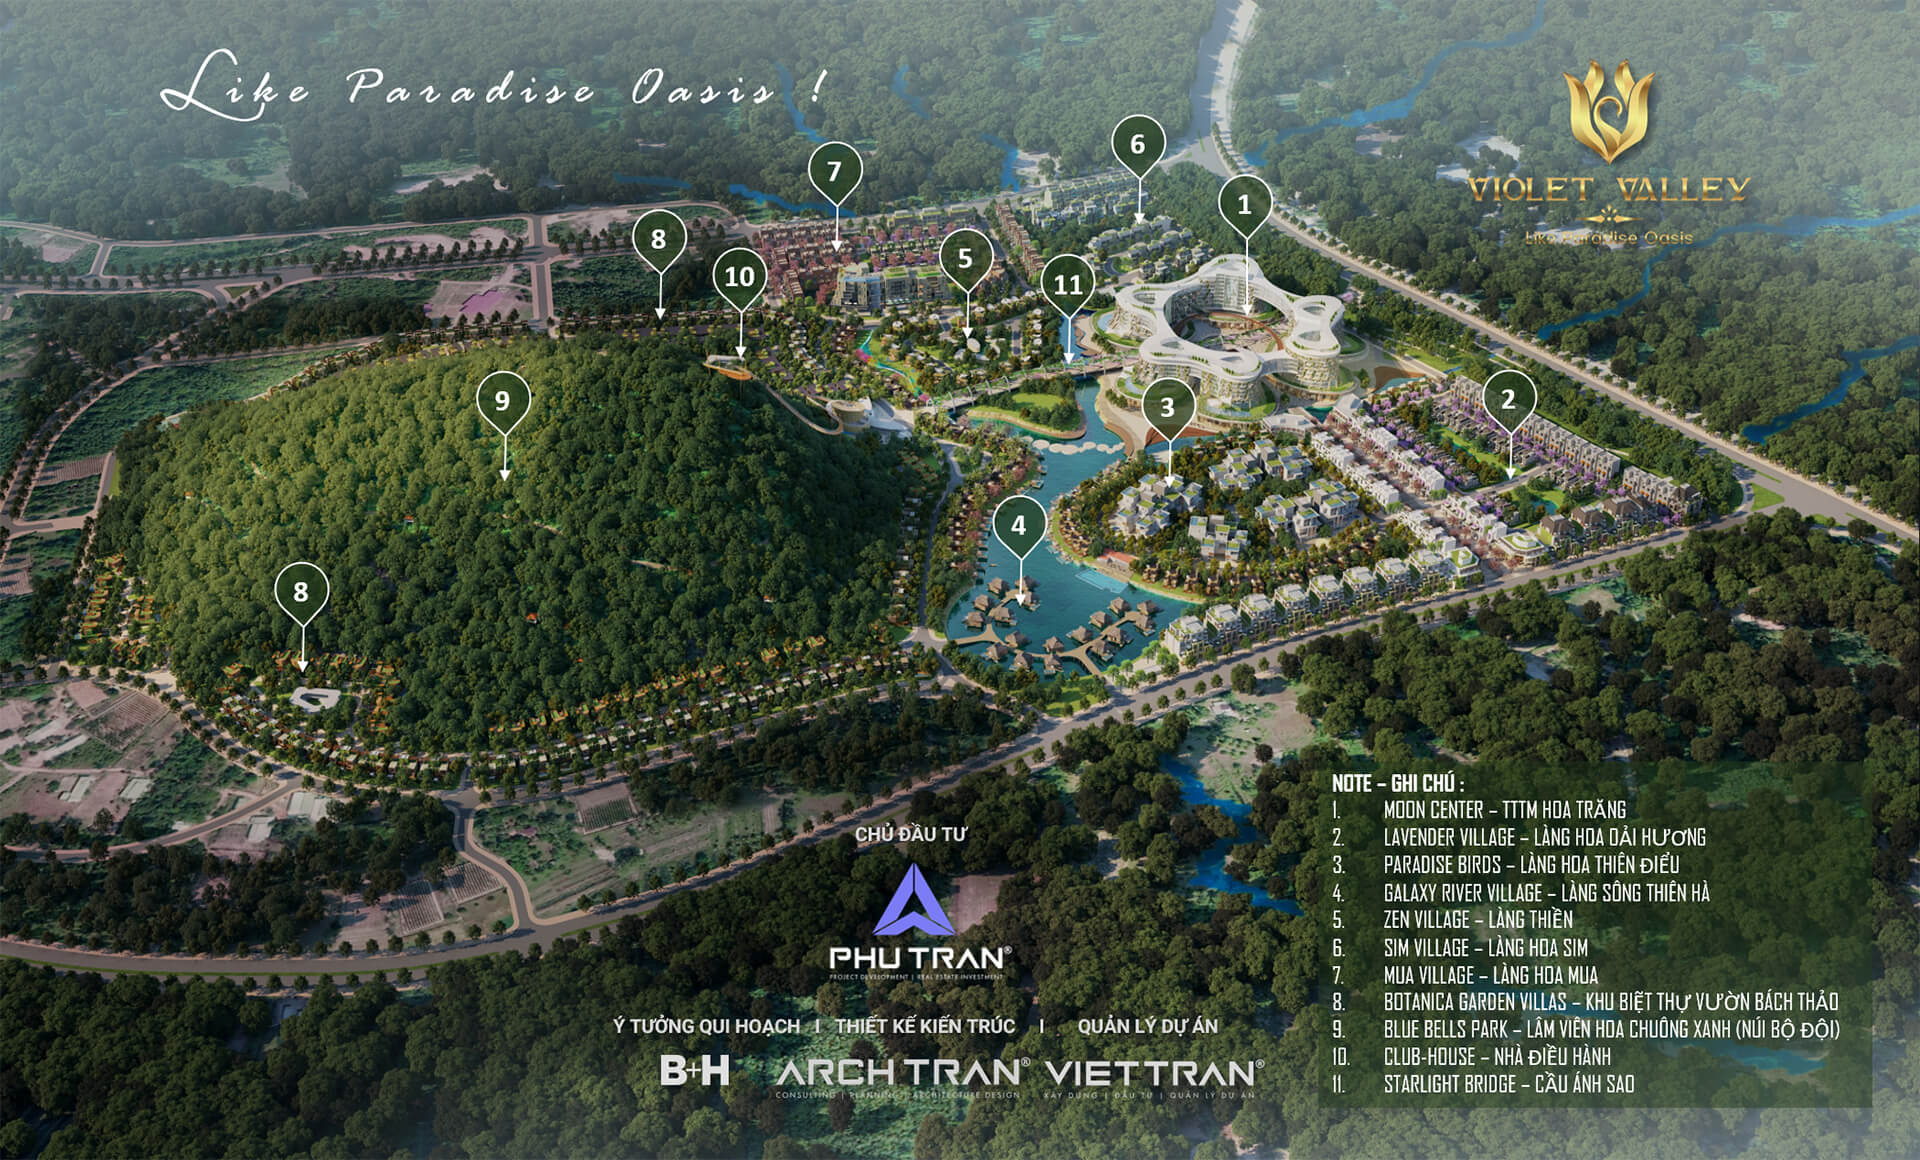 Phối cảnh qui hoạch phân khu 1/500 dự án Violet Valley Phú Quốc - Khu Dân Cư Thung Lũng Tím Phú Quốc